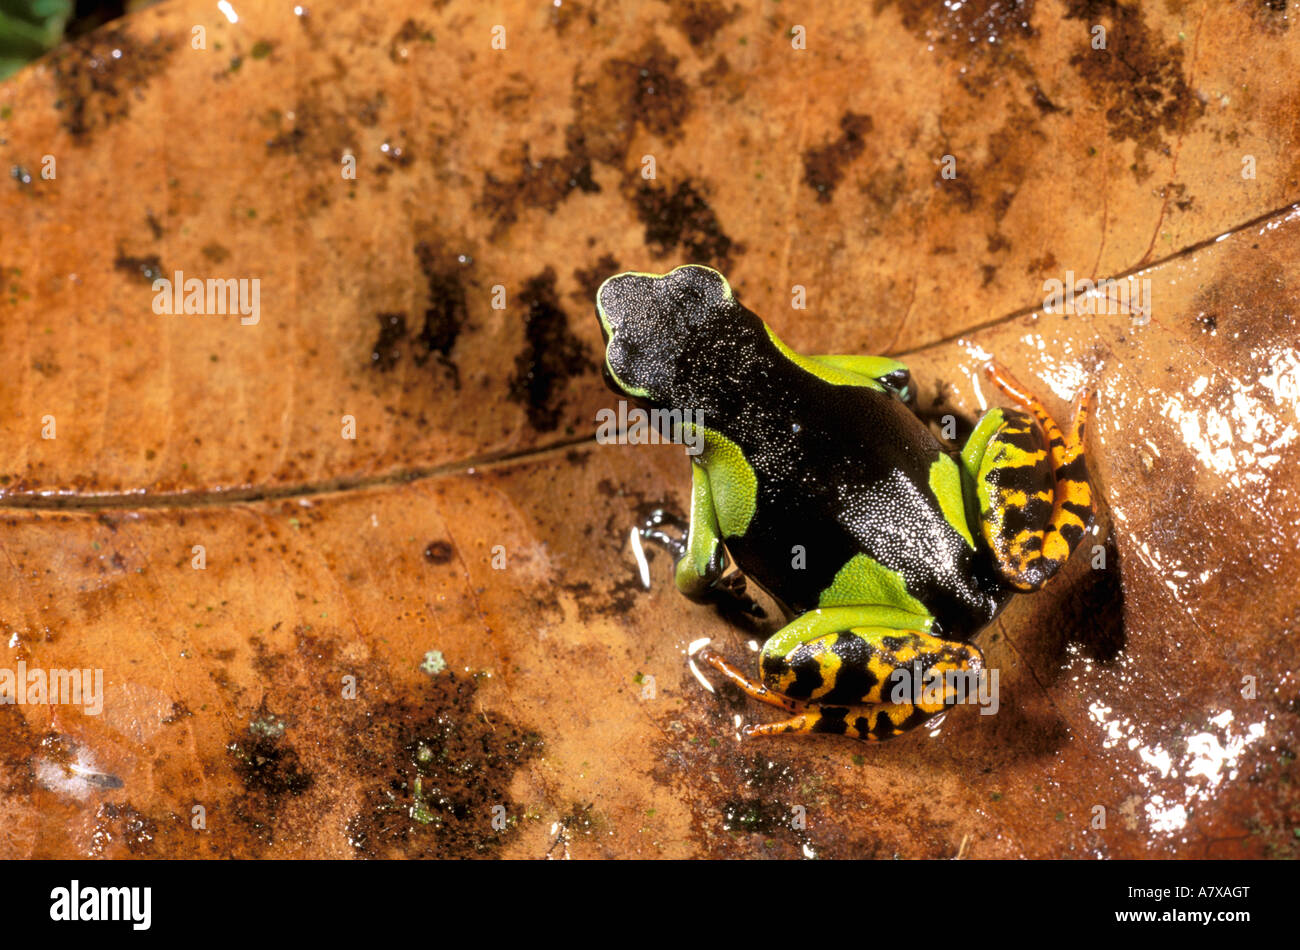 Africa, Madagascar, Nosy Mangabe. Mantella frog (Mantella madagascariensis) Stock Photo